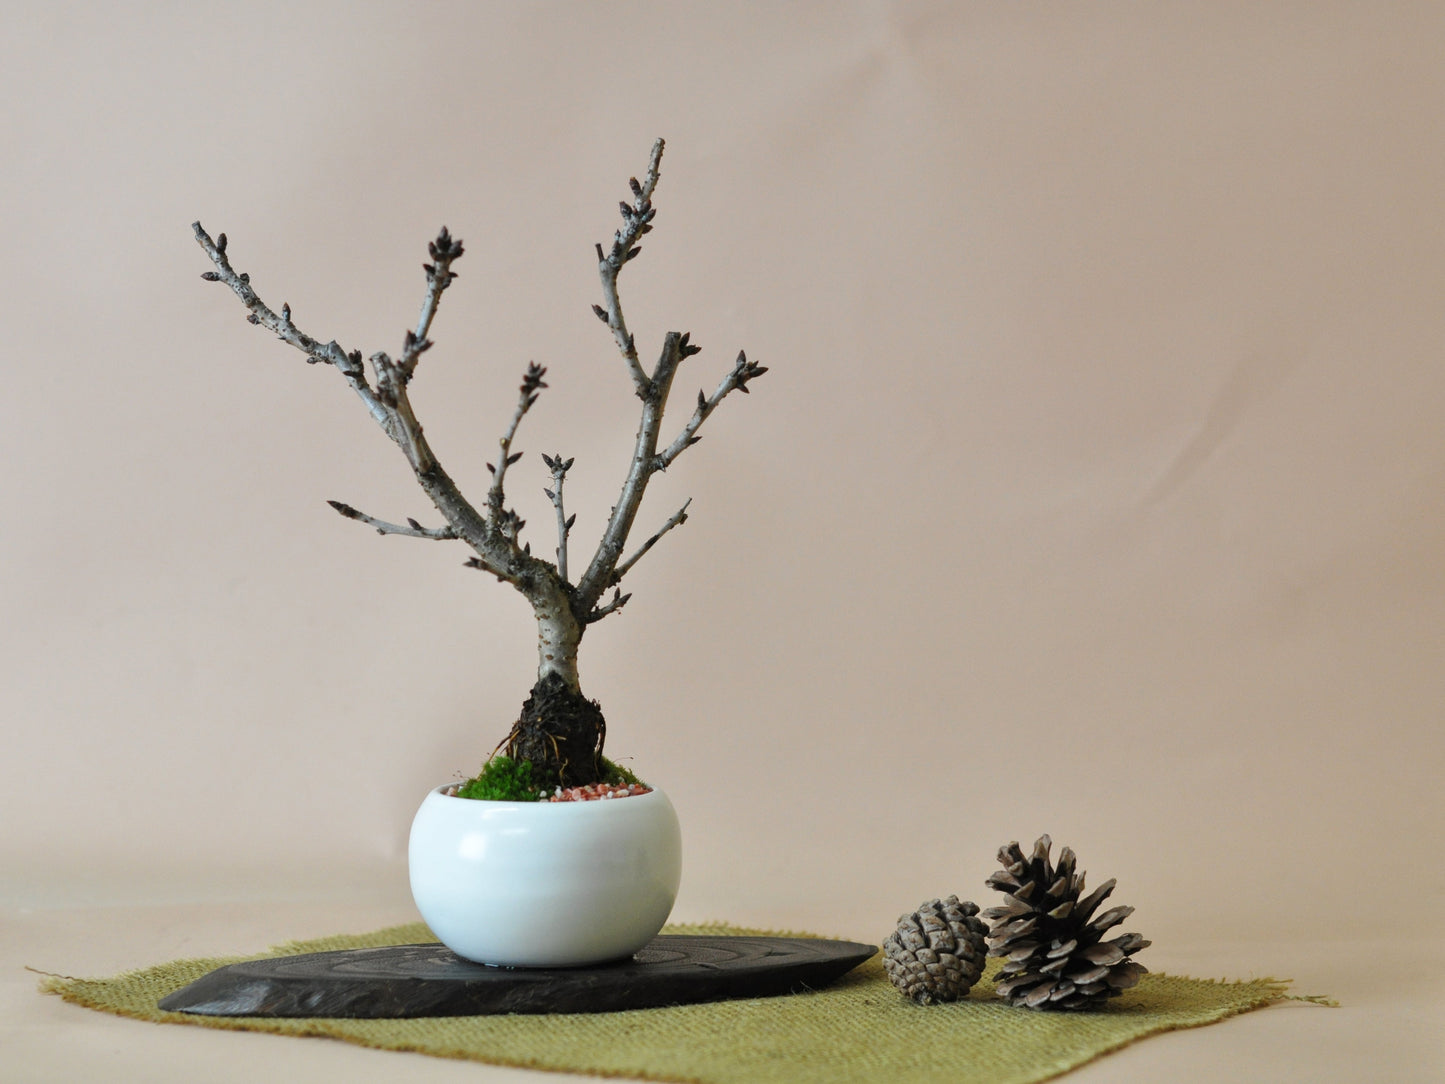 桜のモダン盆栽 白玉鉢